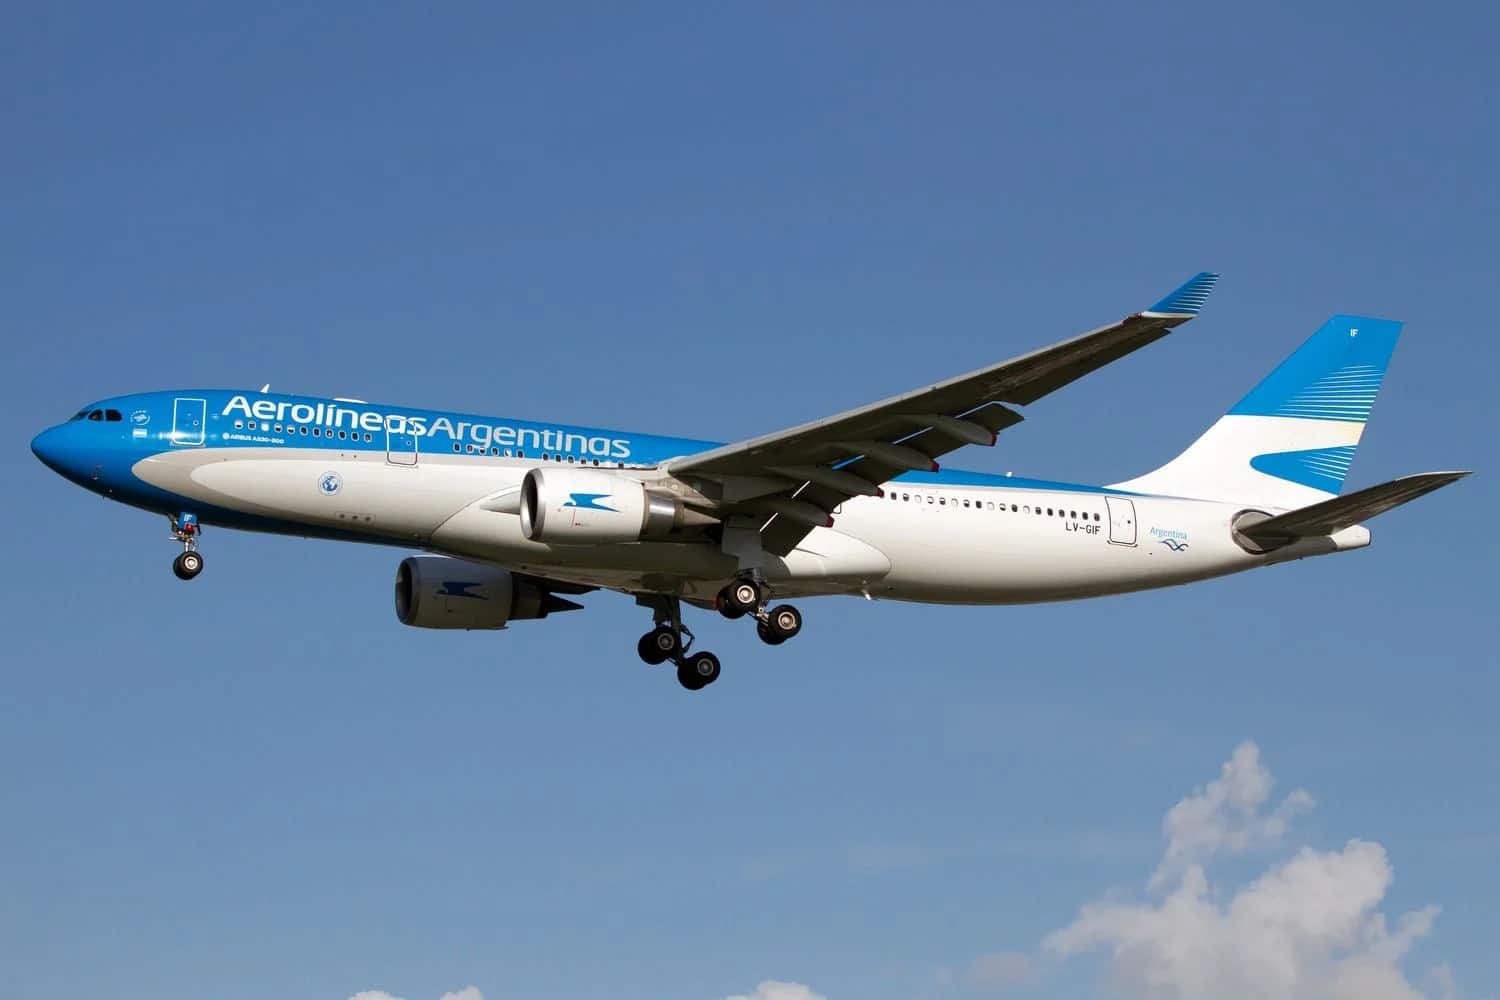 ستطير الخطوط الجوية الأرجنتينية بطائرتها إيرباص A330-200 إلى الدوحة للمشاركة في كأس العالم FIFA